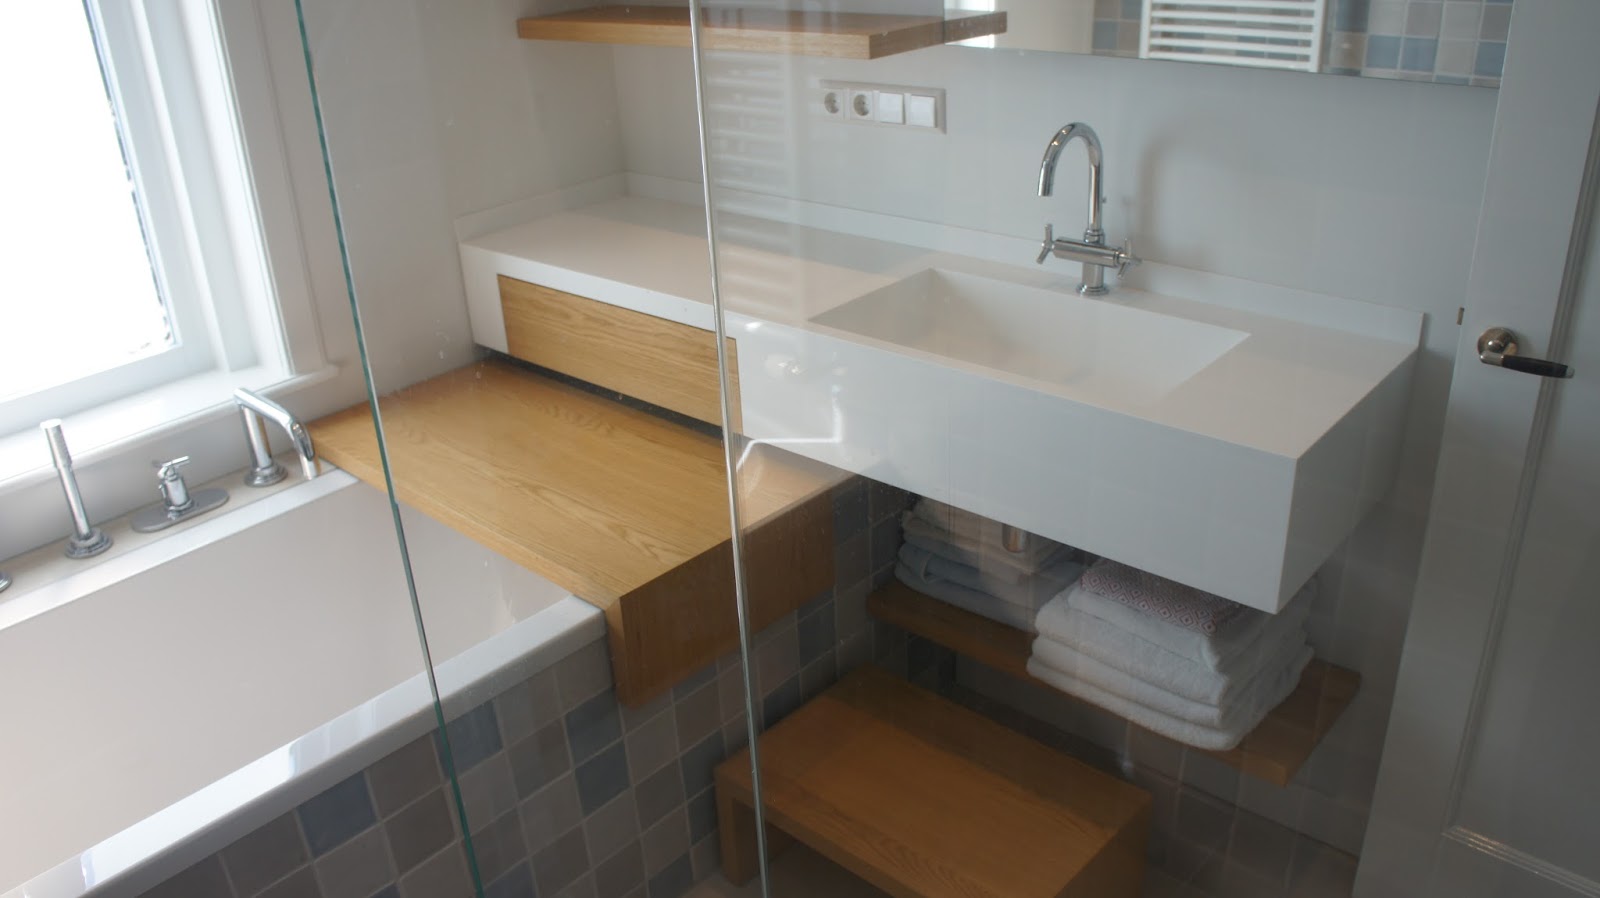 Wonderlijk multifunctionele badkamer in kleine ruimte - Blog - UW-haard.nl HM-04